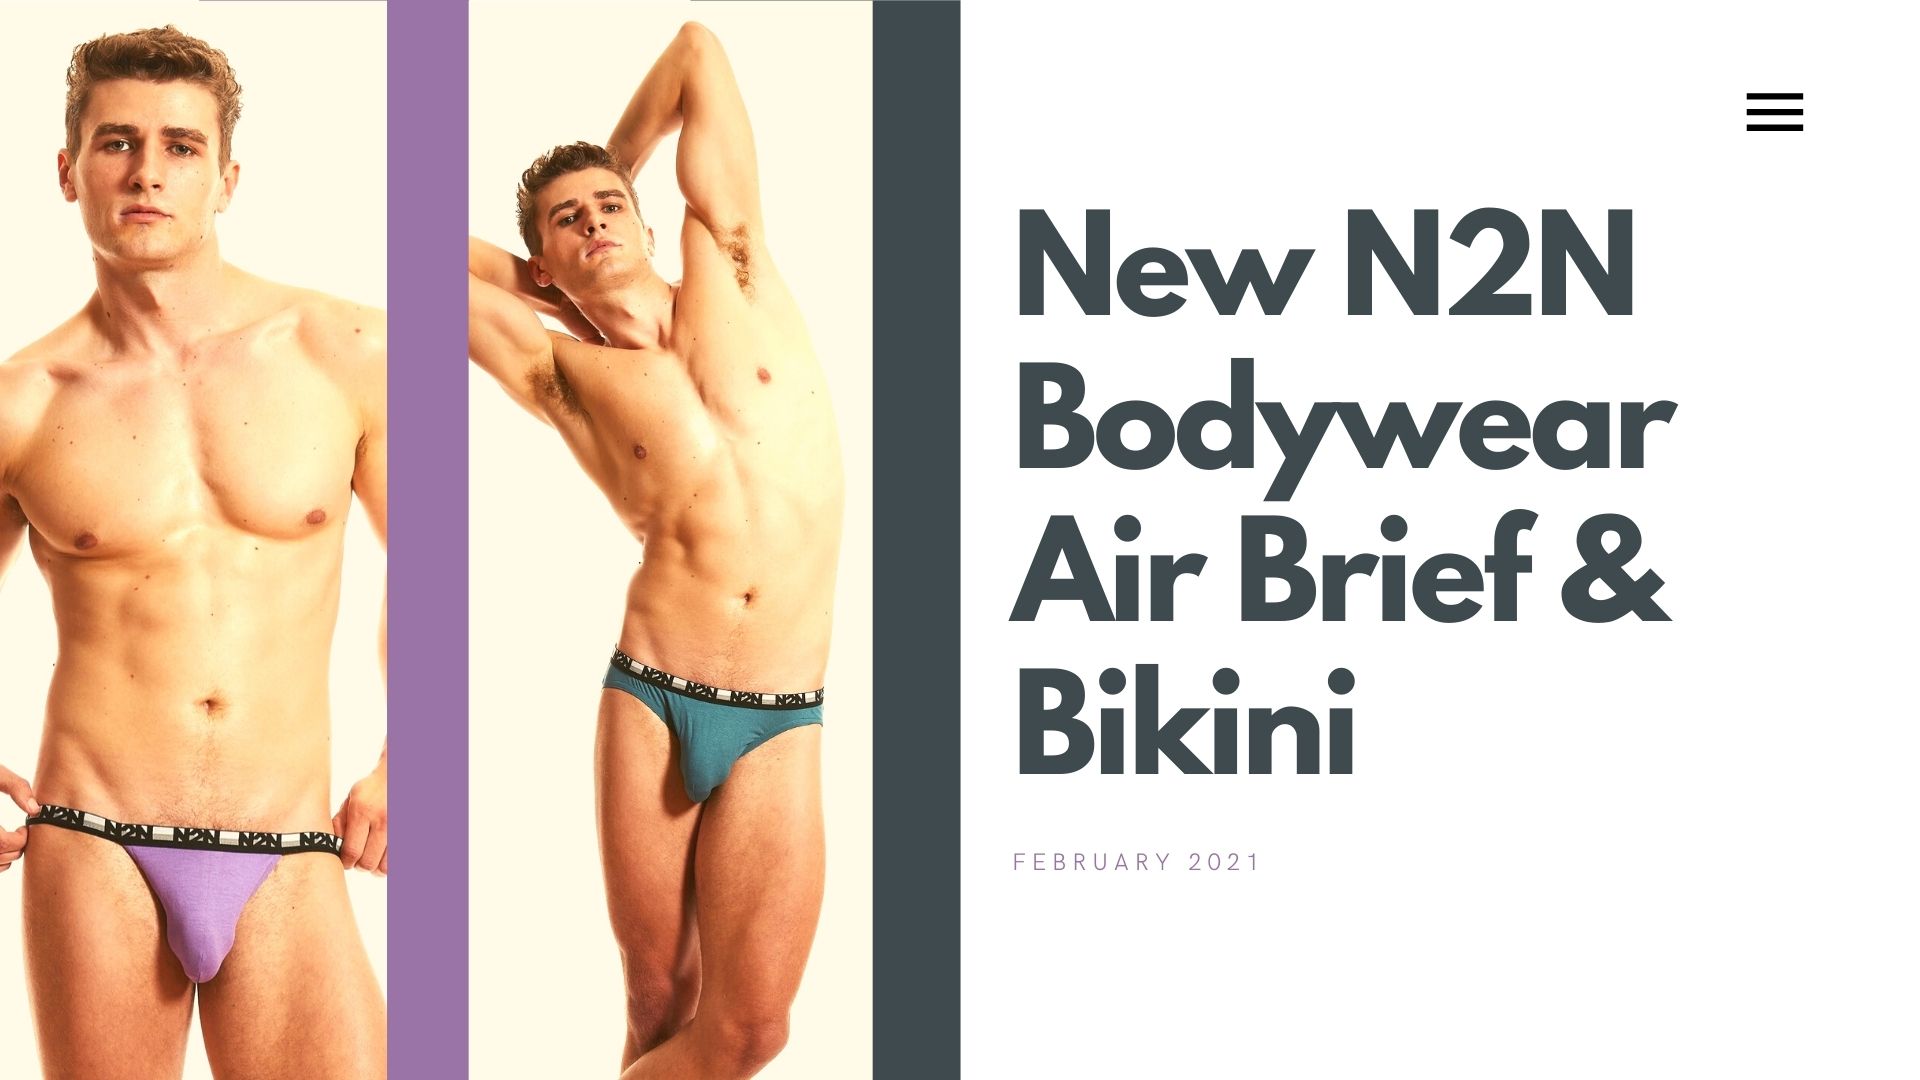 N2N Bodywear - Latest Emails, Sales & Deals